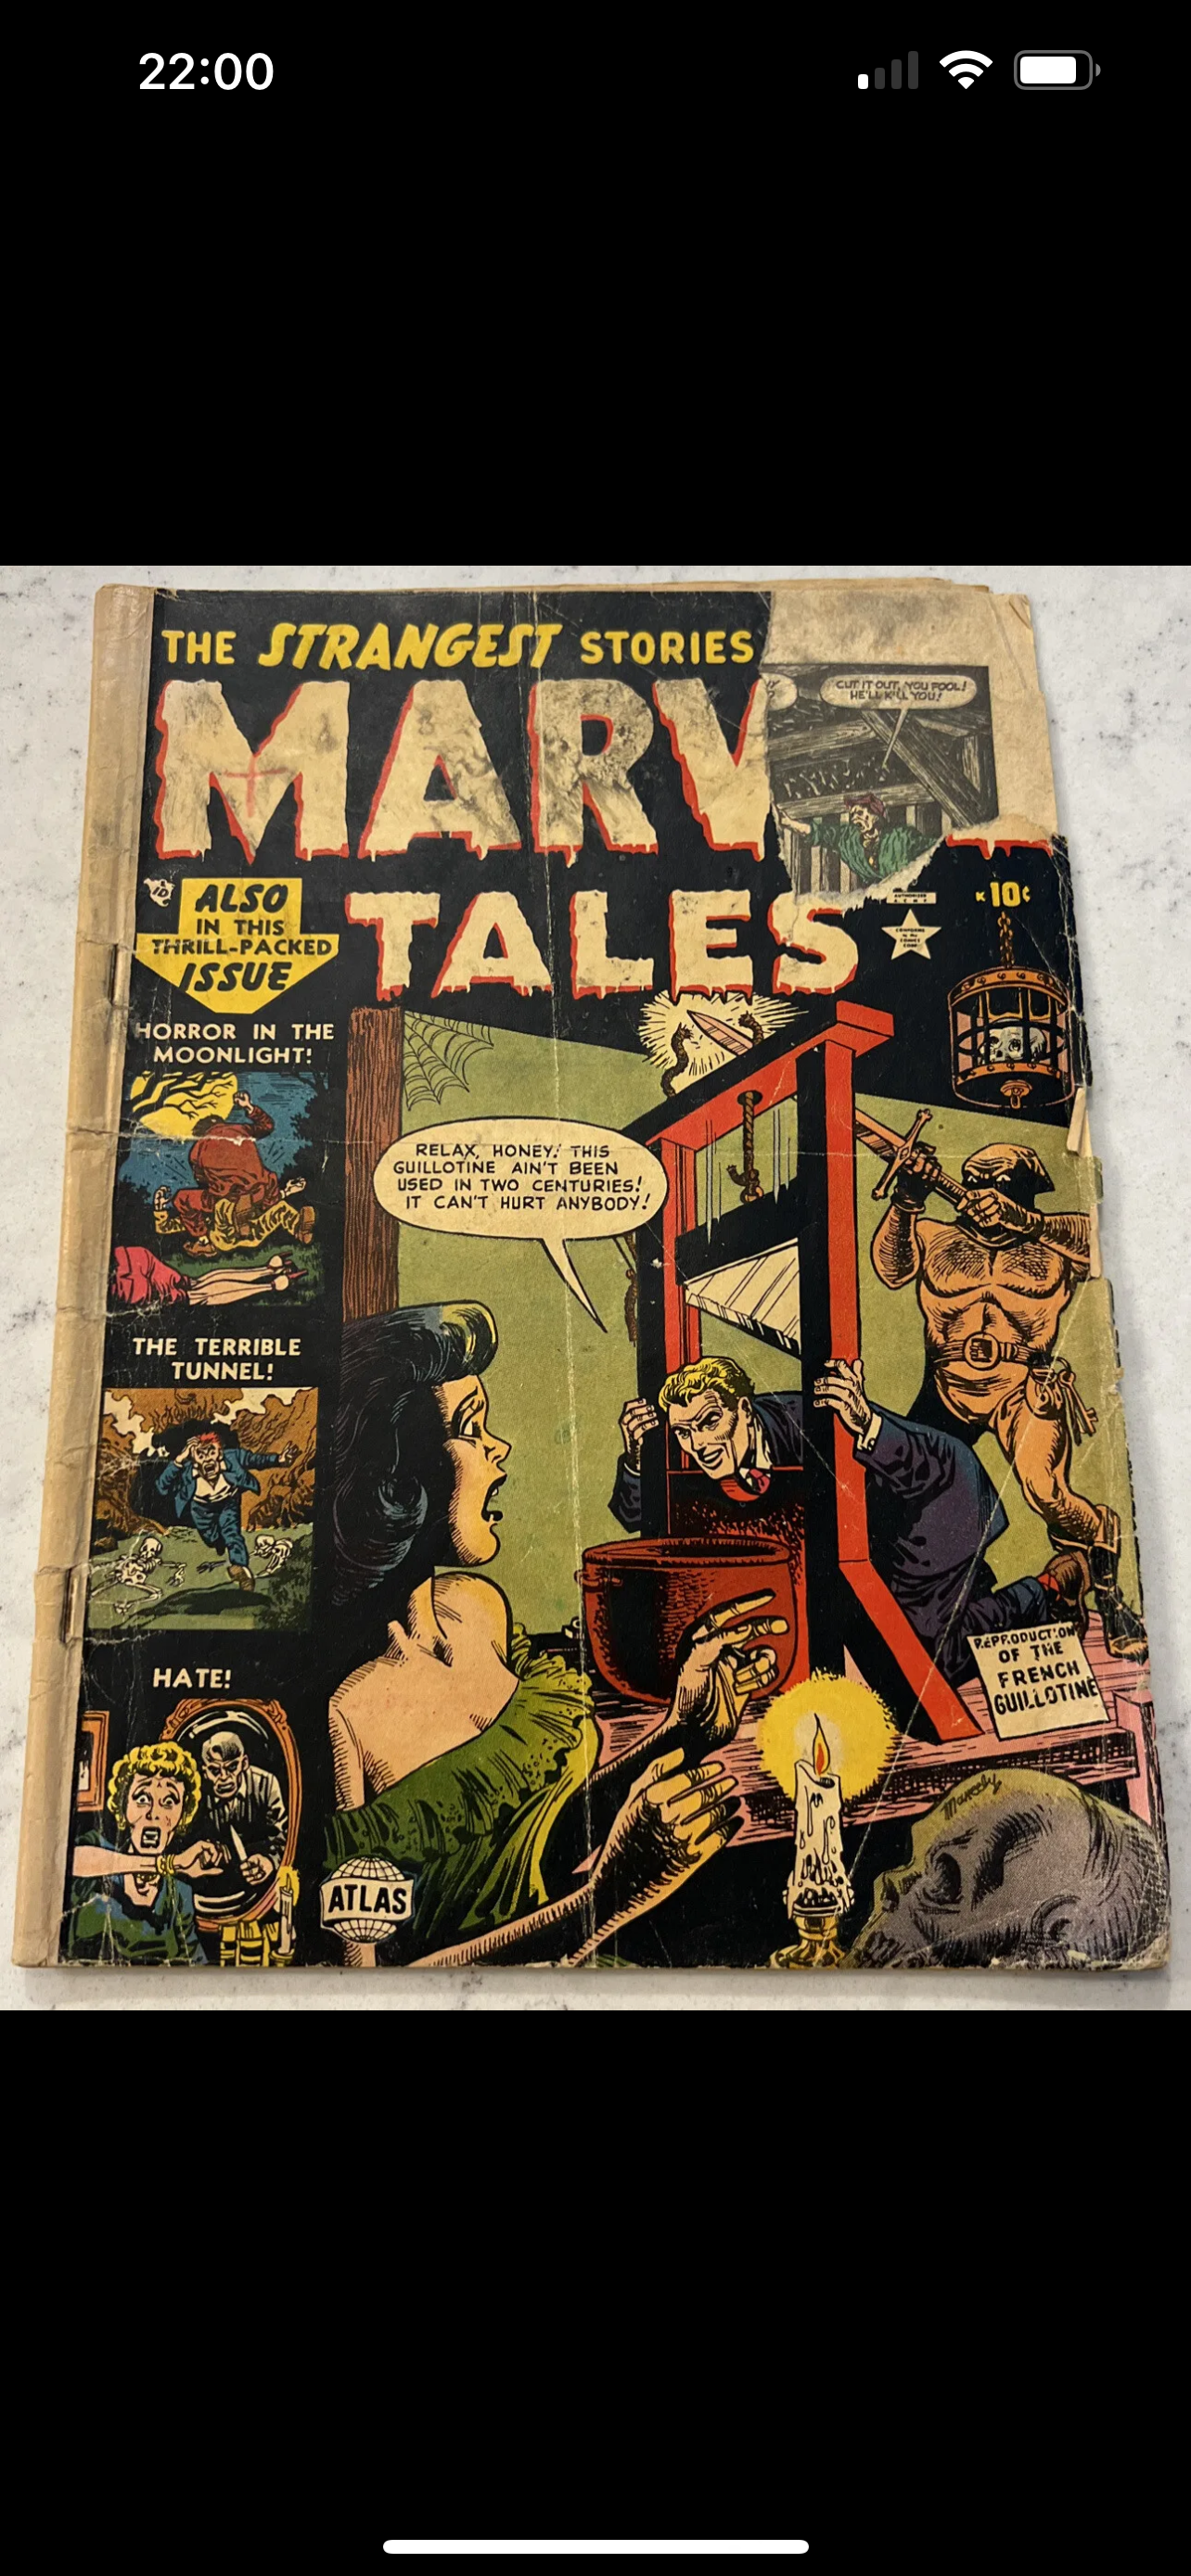 Marvel Tales #108 (Marvel/Atlas 1952) Pre Code Horror